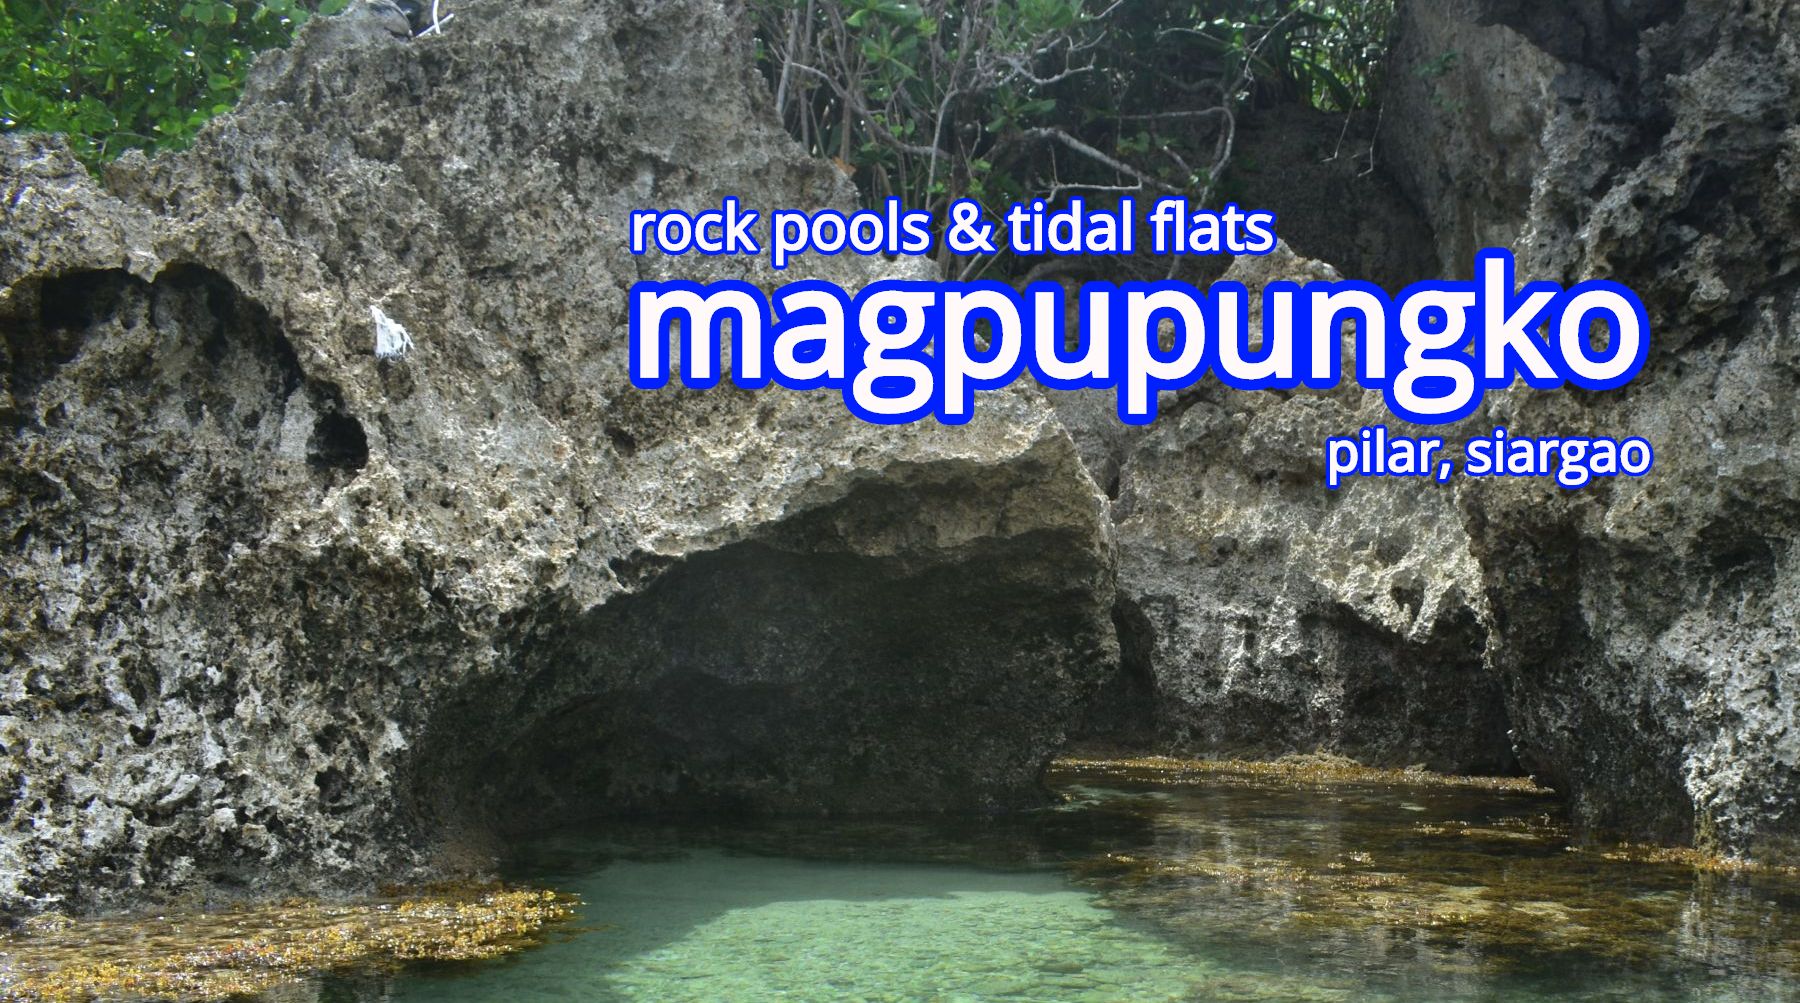 magpupungko rock pools and tidal flats